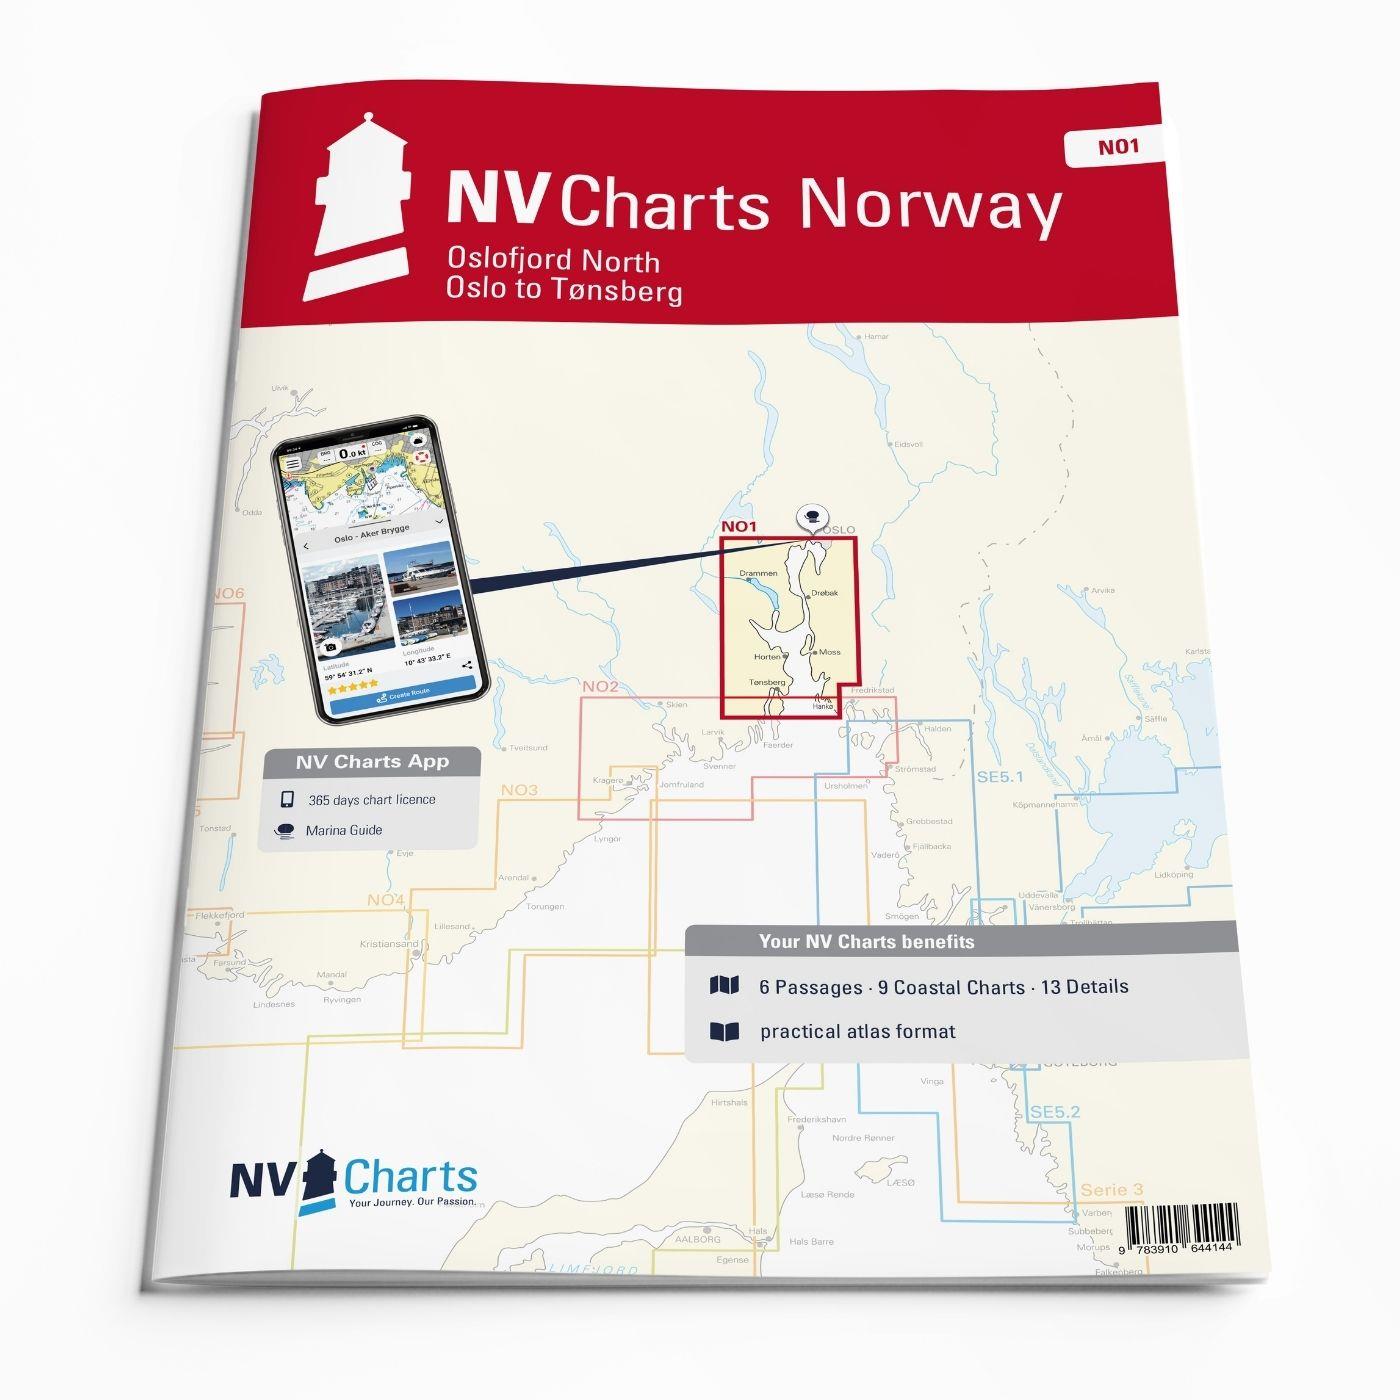 NV Charts Norway NO1 - Oslofjord Nord, Oslo to Tønsberg